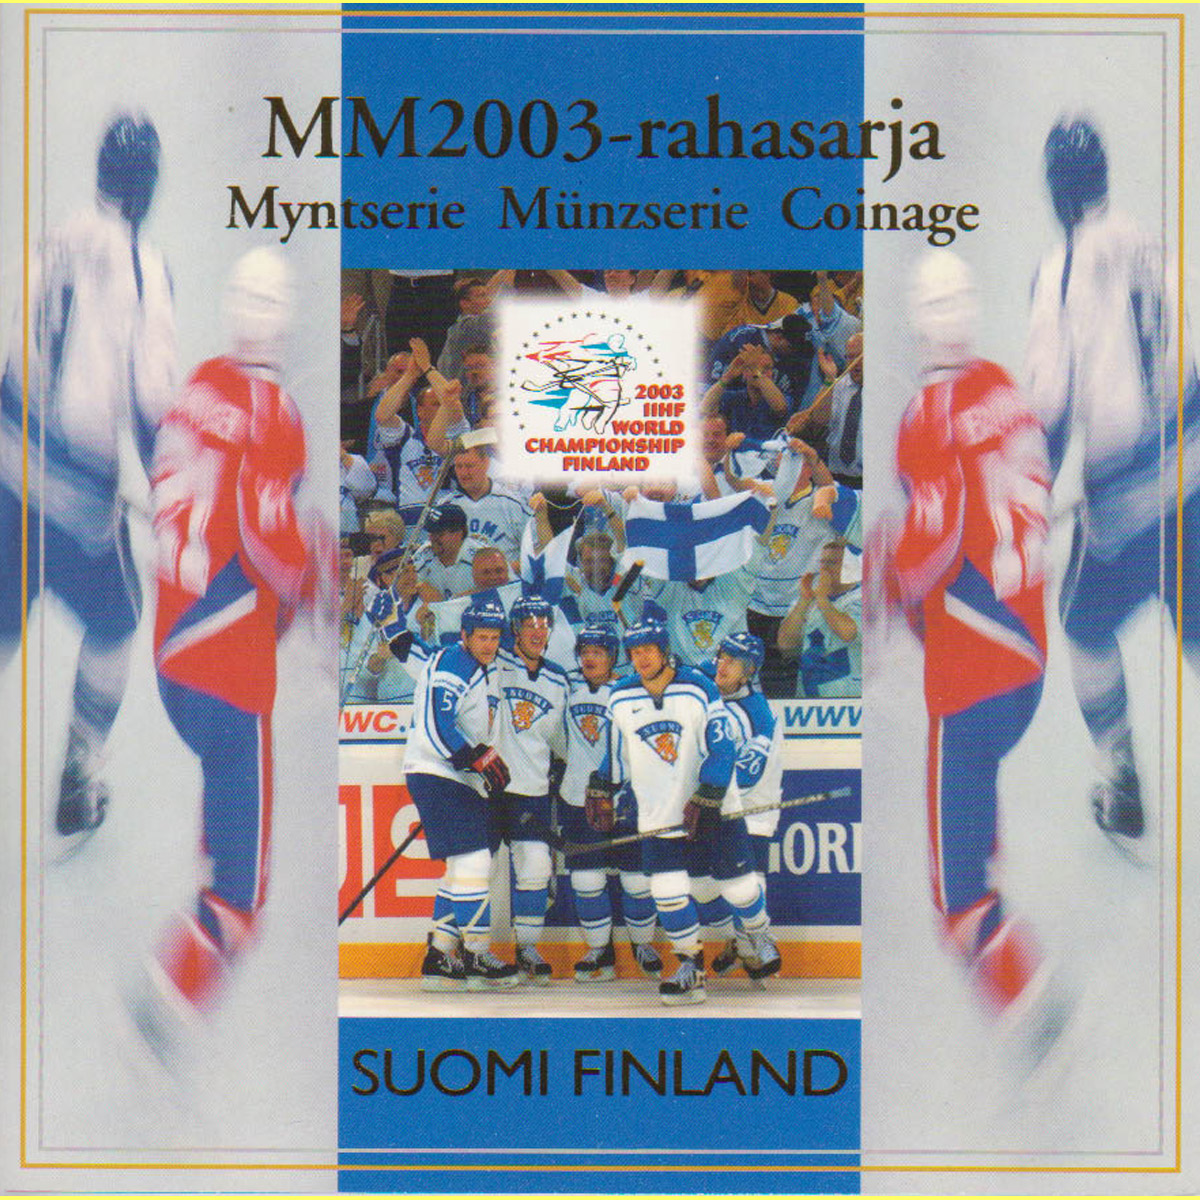  Offiz. Sonder-KMS Finnland *67. Eishockey-WM der Herren* 2003 nur 15.000St!   